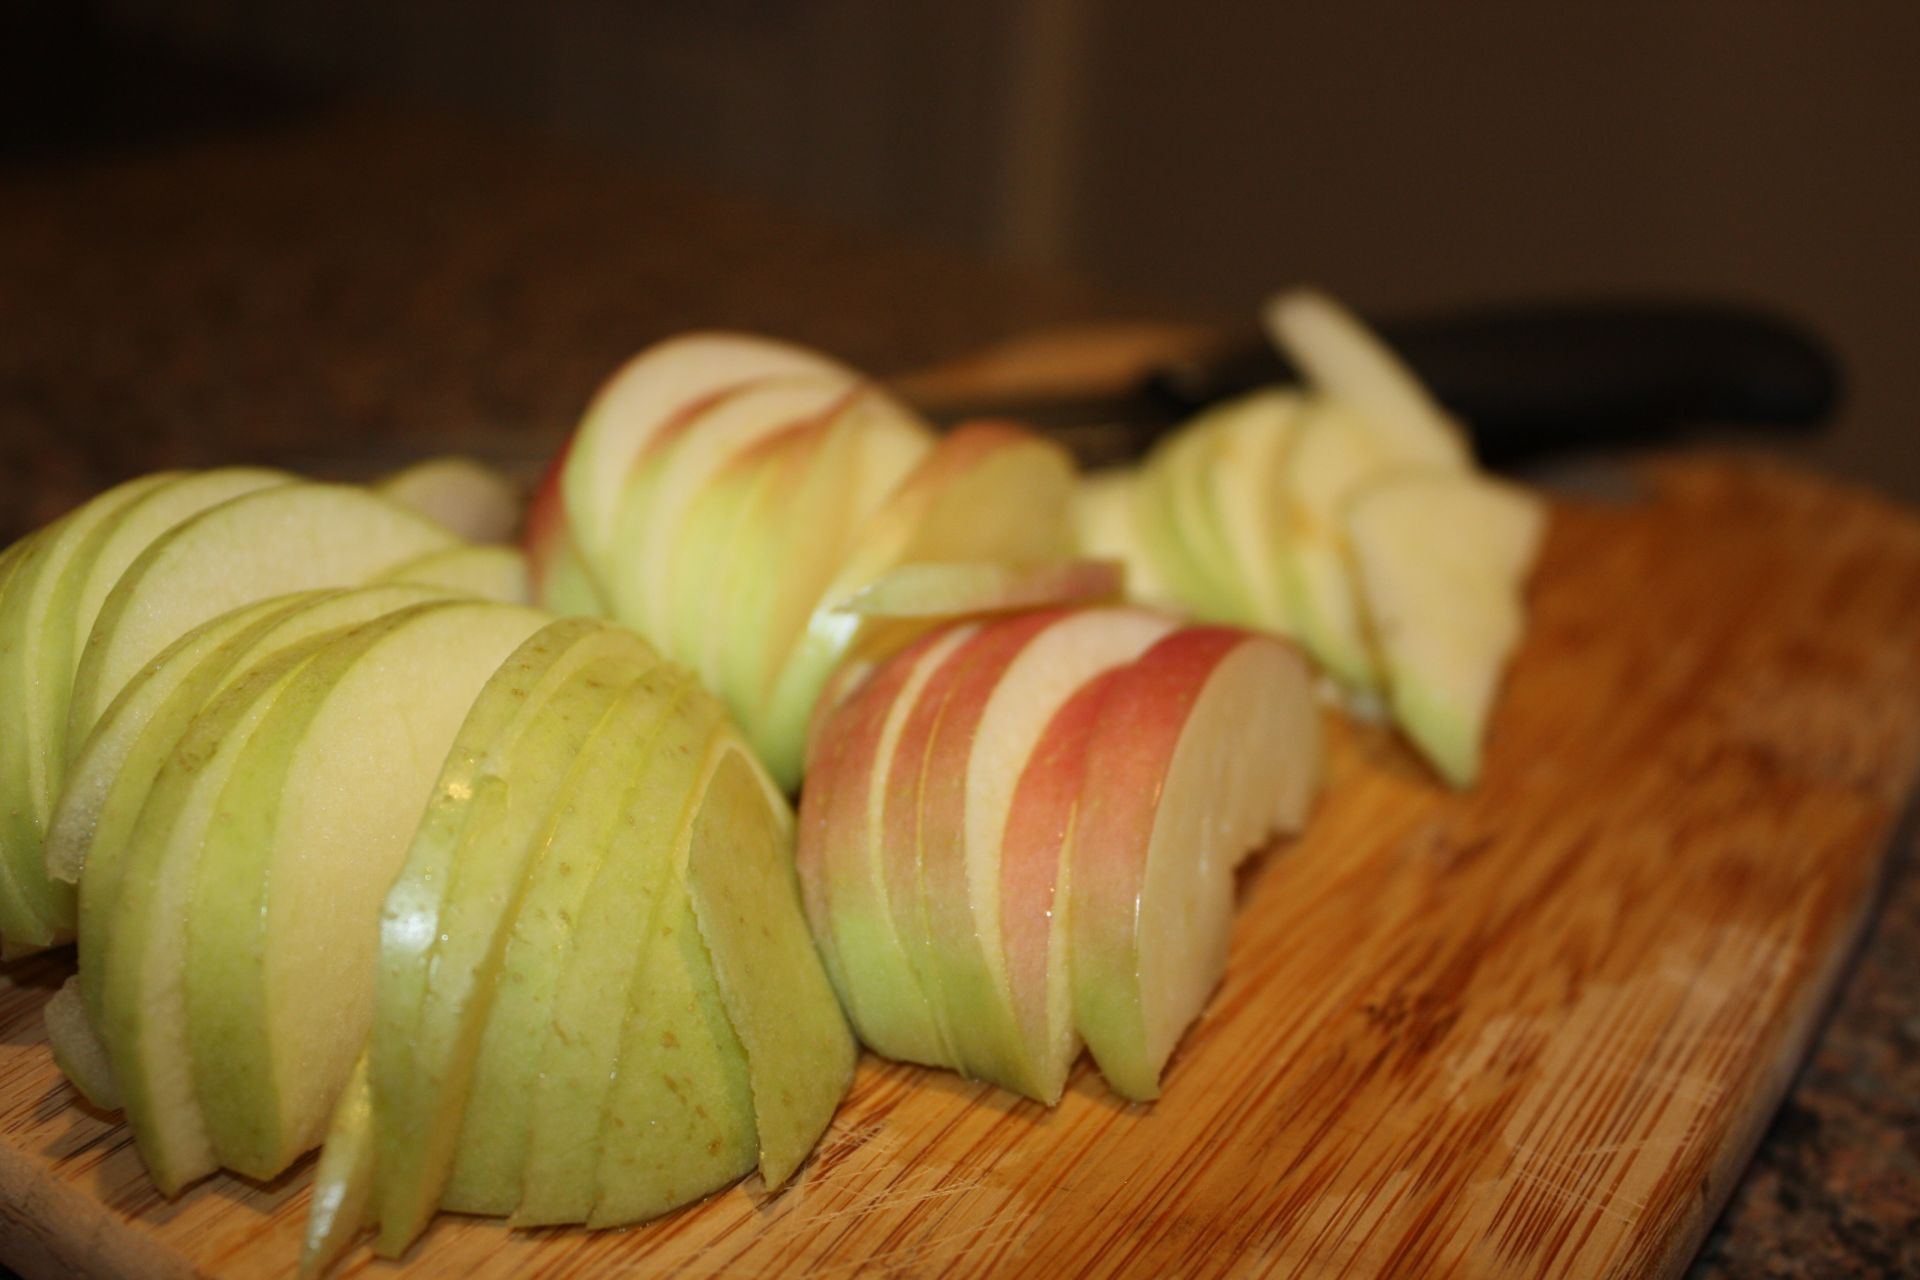 pretty sliced apples!